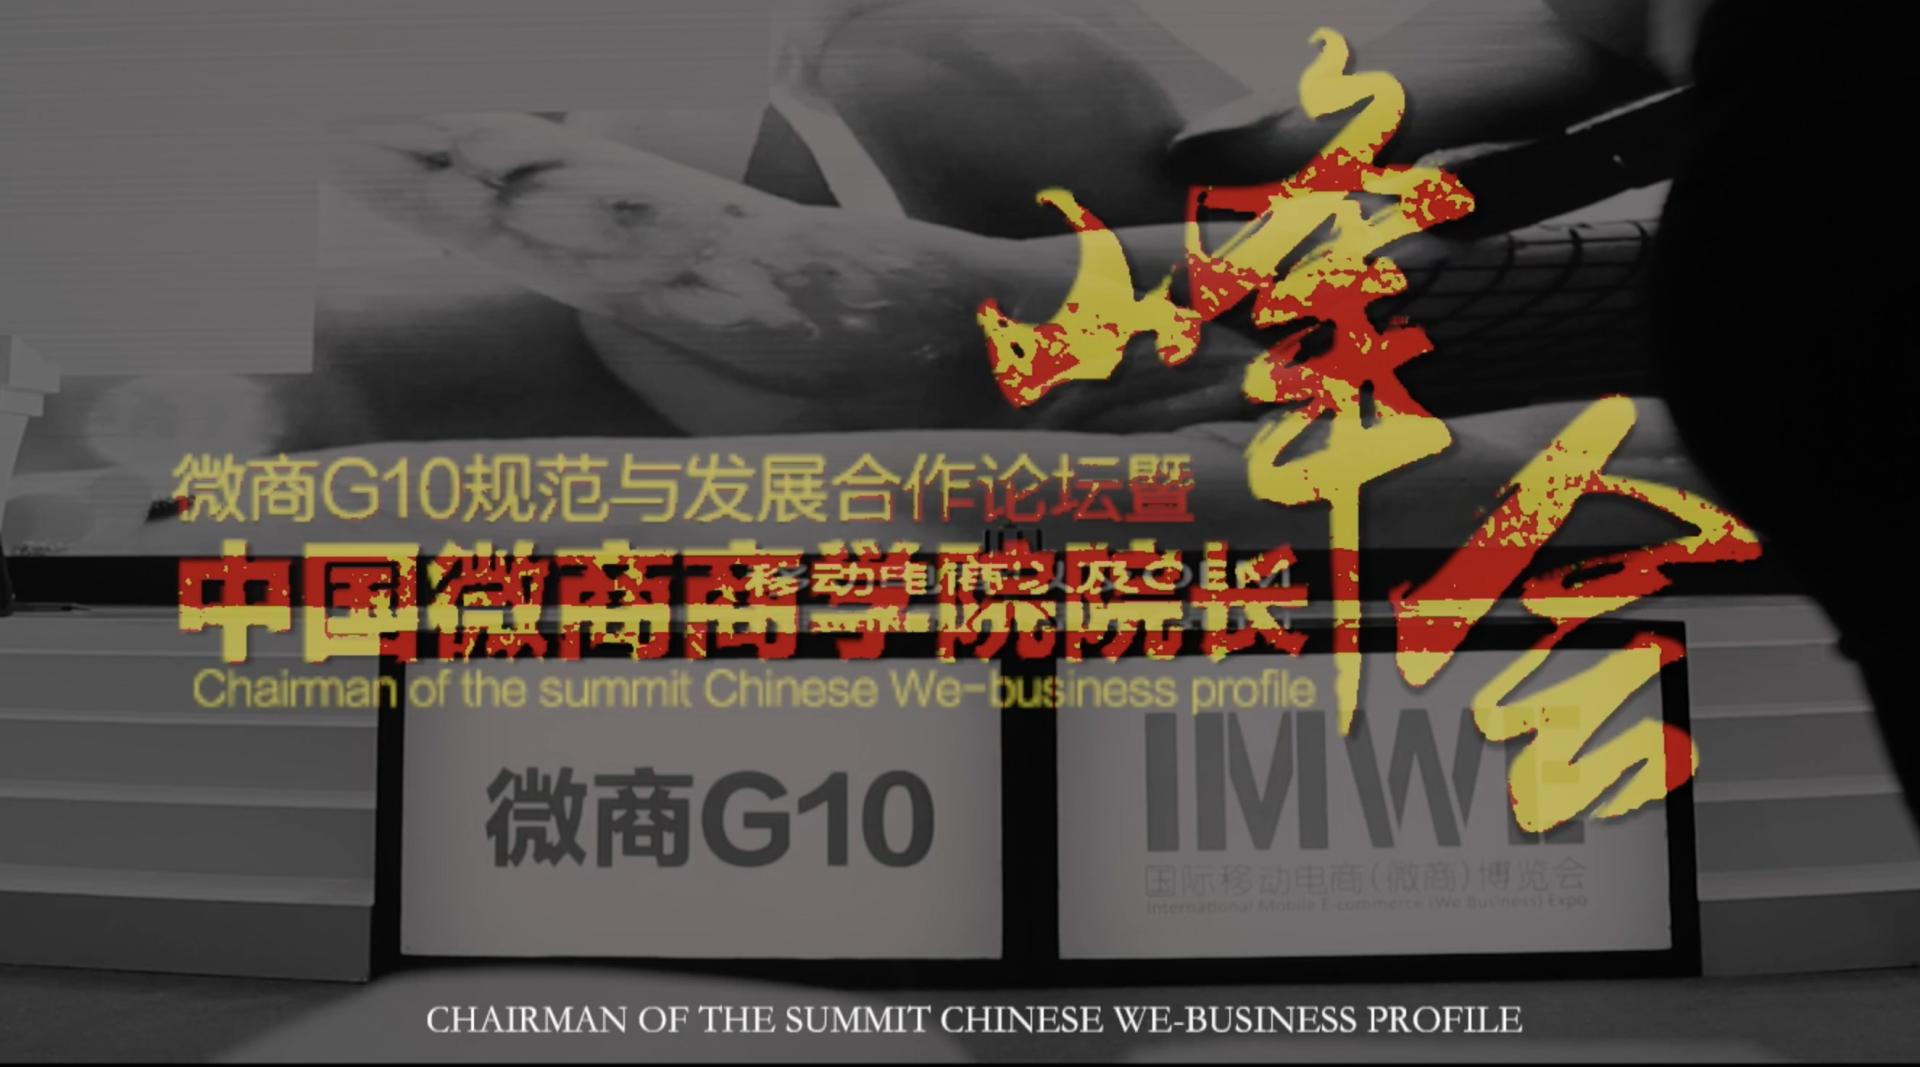 微商G10規範與發展合作論壇暨中國微商商學院院長峰會